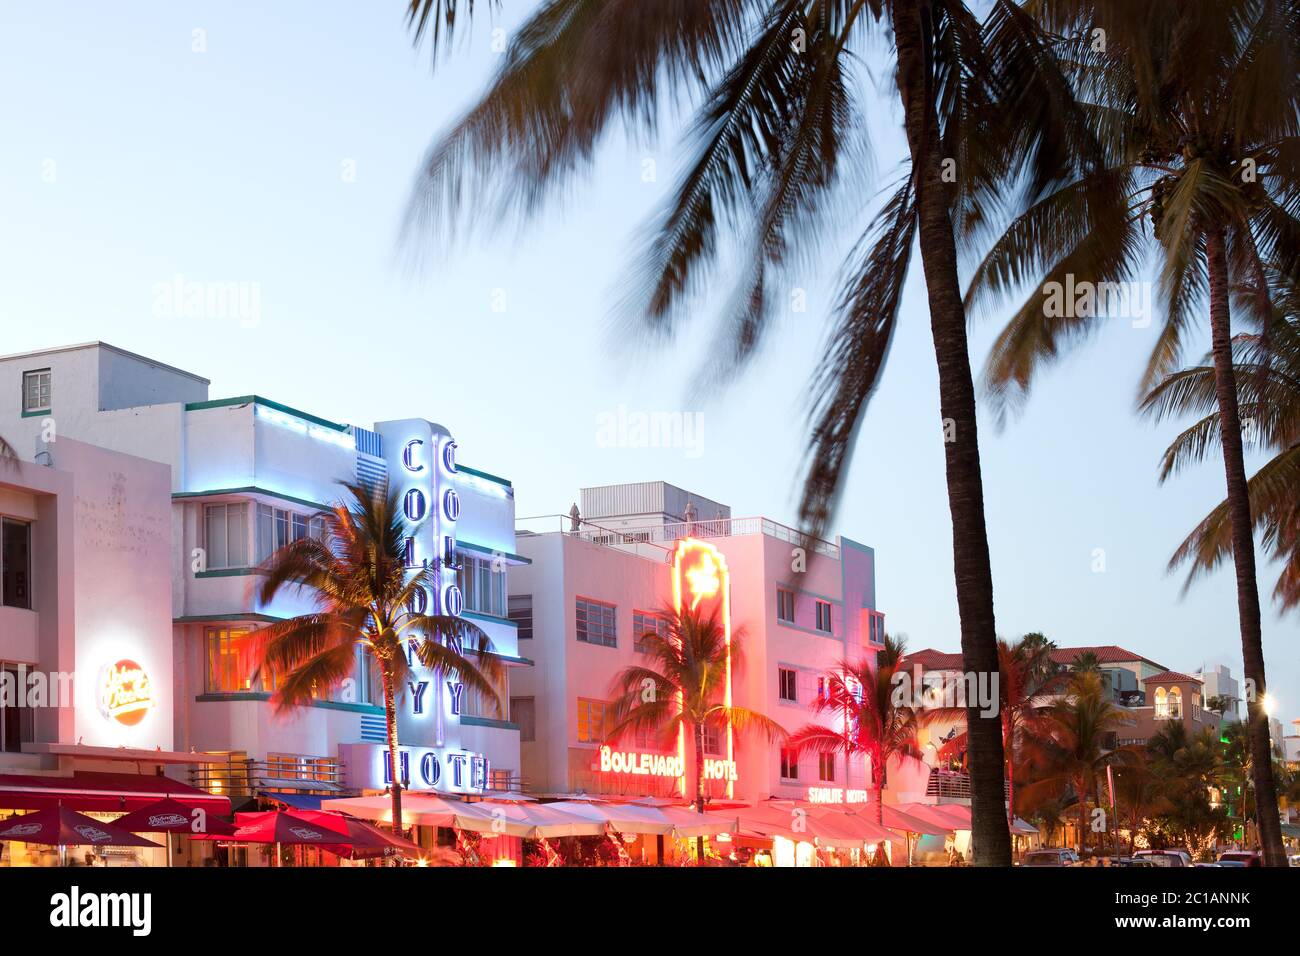 South Beach, Miami, Florida, Estados Unidos - Hoteles, bares y restaurantes en Ocean Drive en el famoso distrito Art Deco. Foto de stock